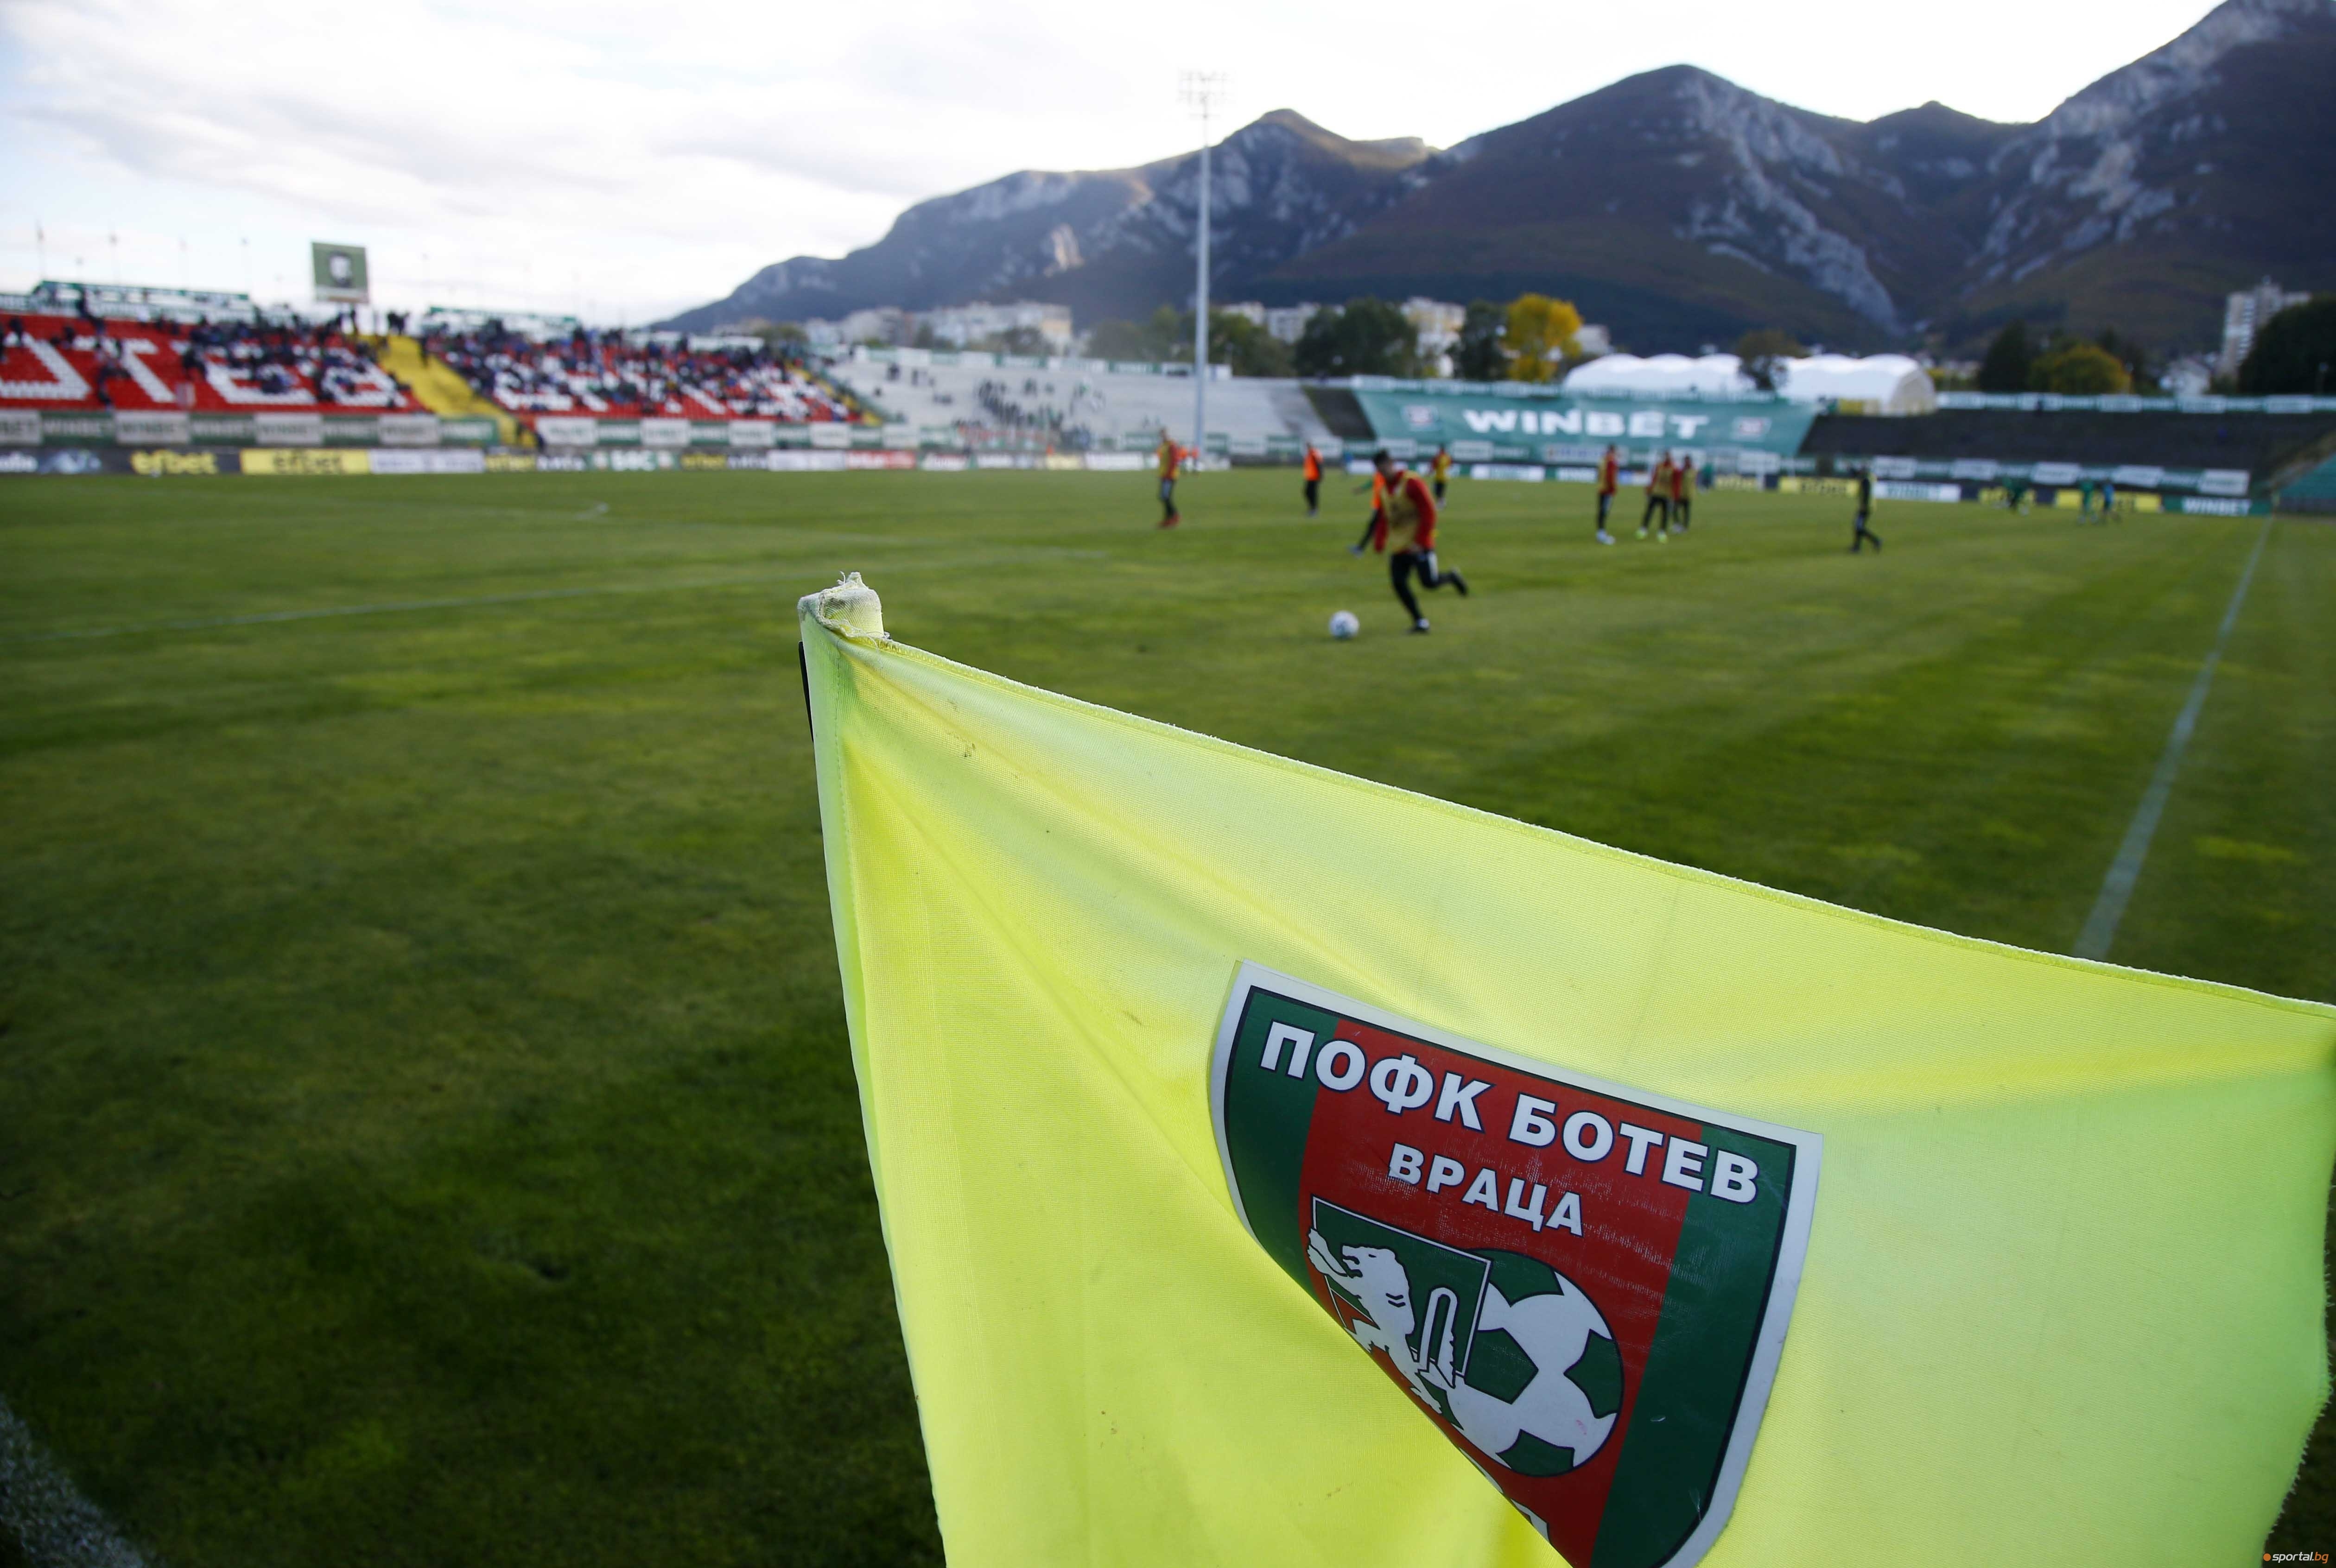 Ръководството на Ботев Враца продължава с новостите по стадиона в